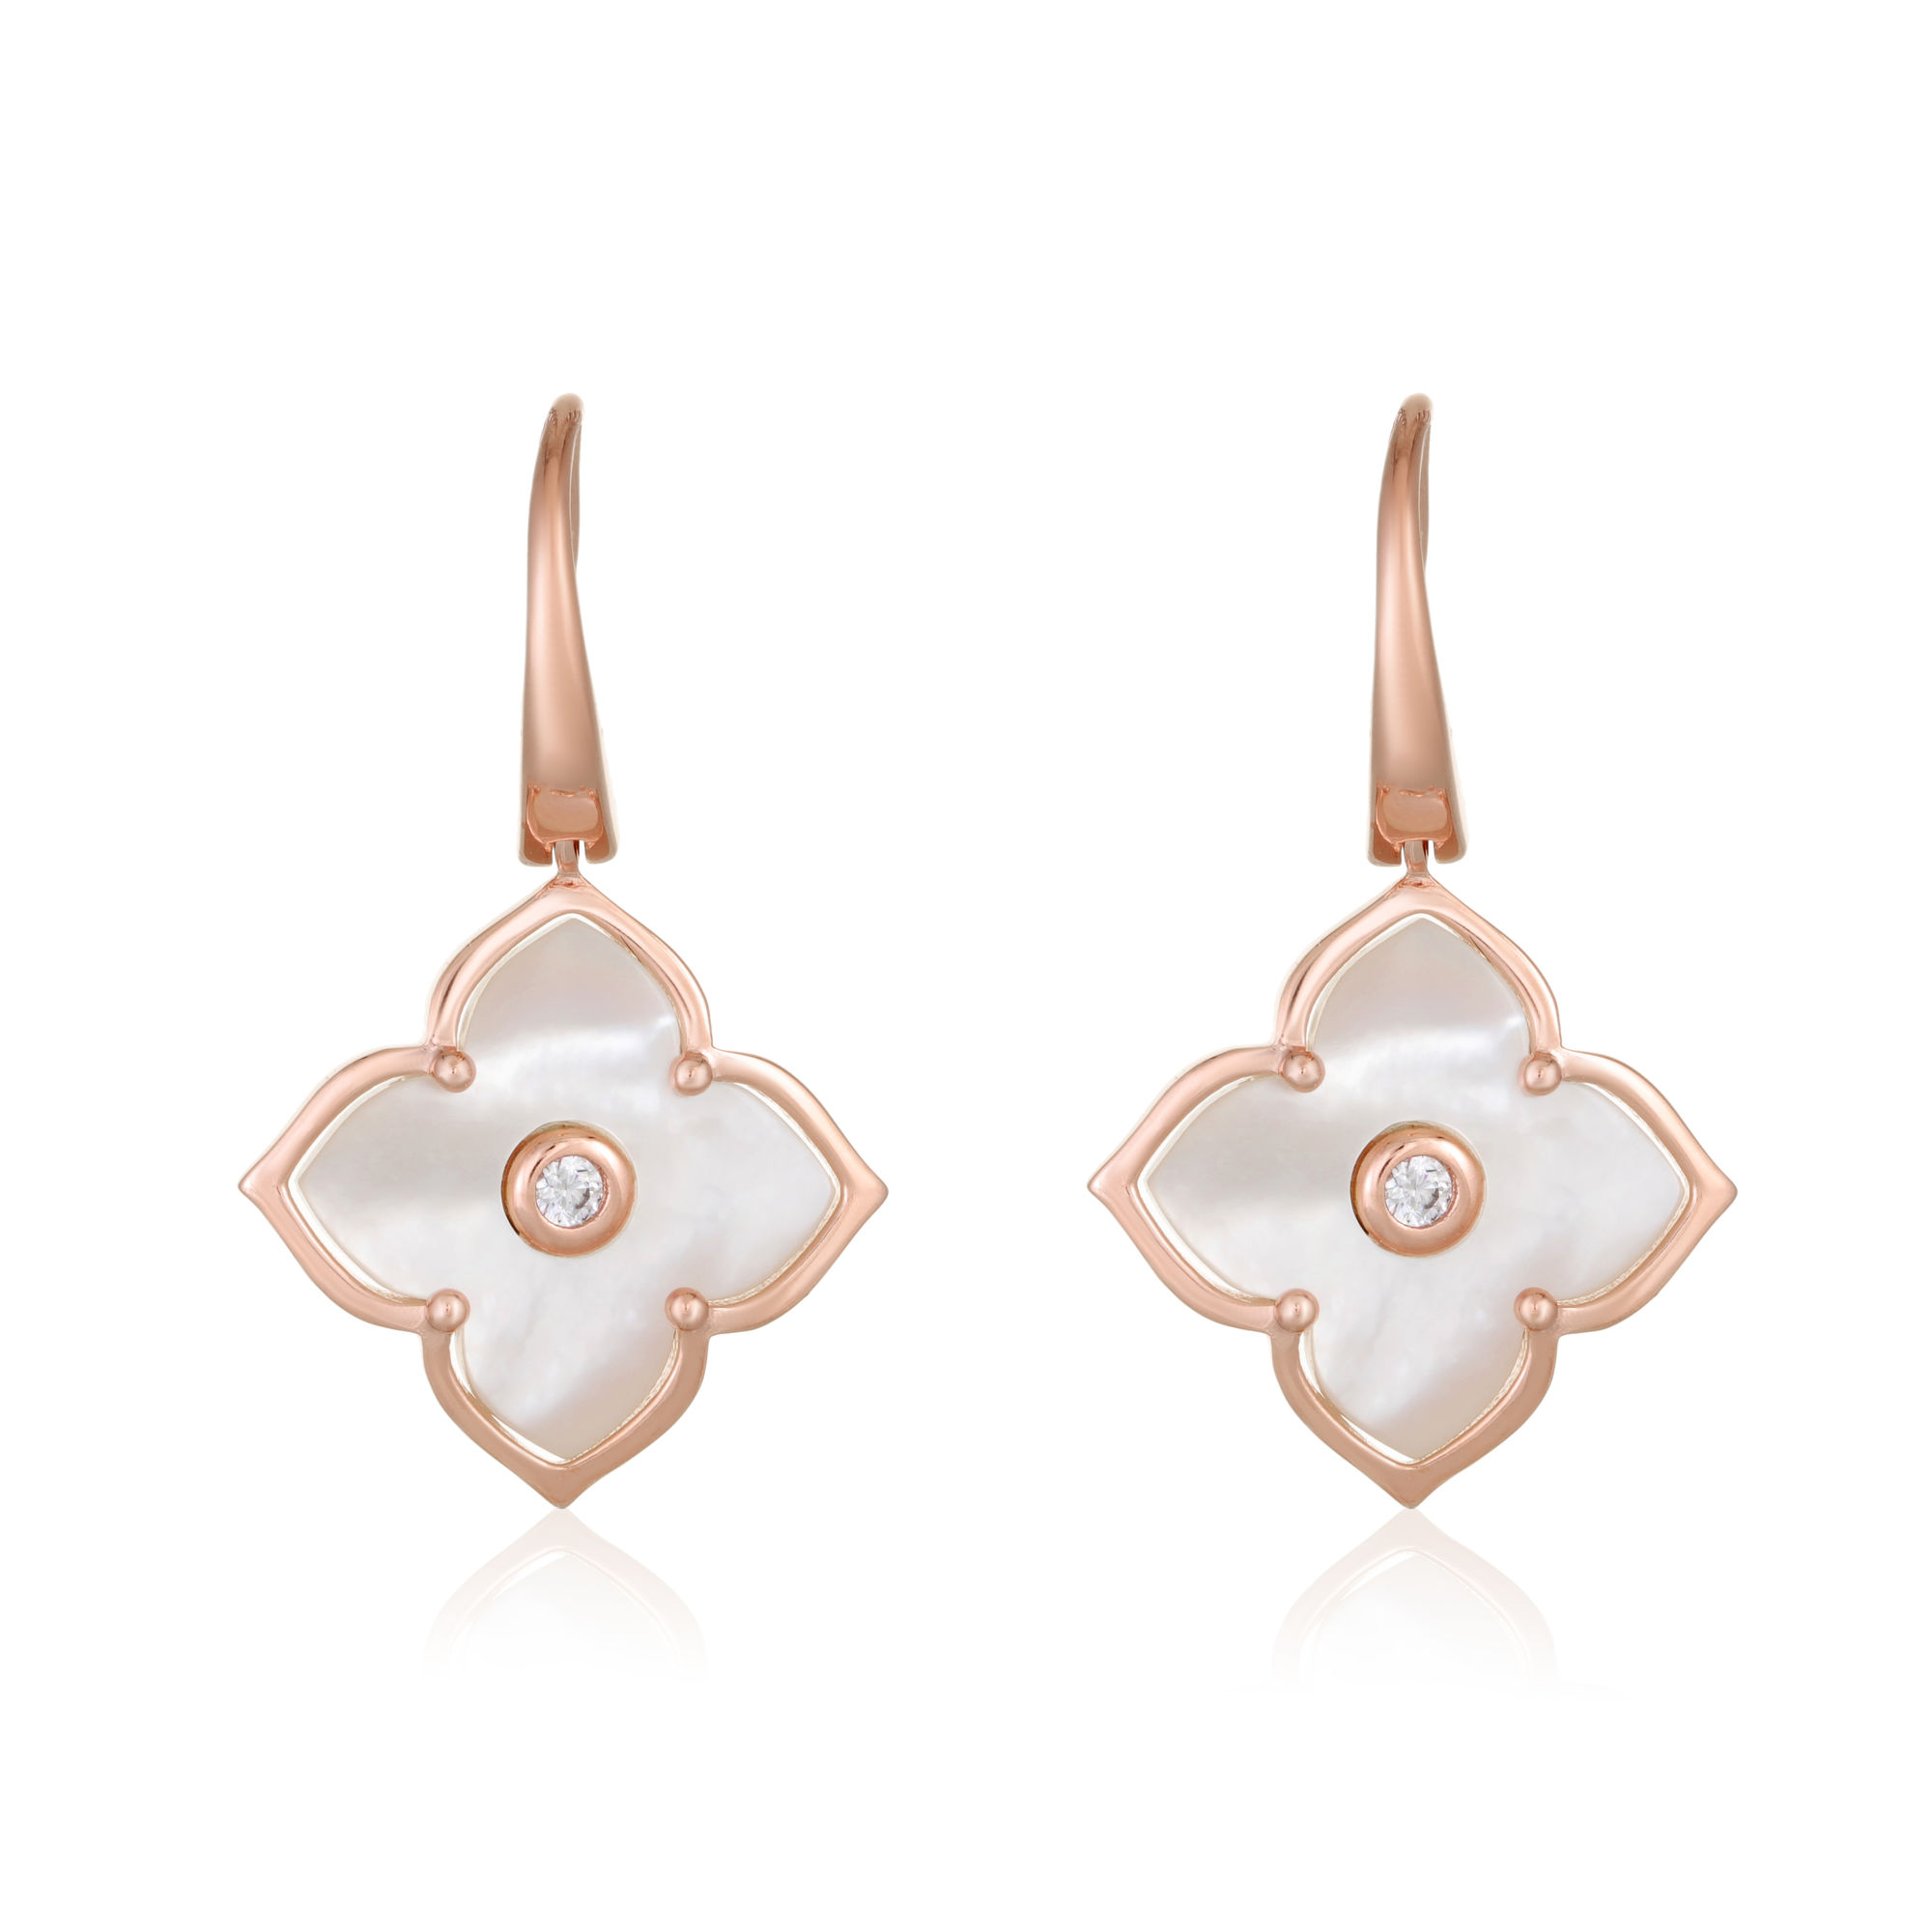 49825-earrings-fashion-jewelry-pink-sterling-silver-49825-5.jpg